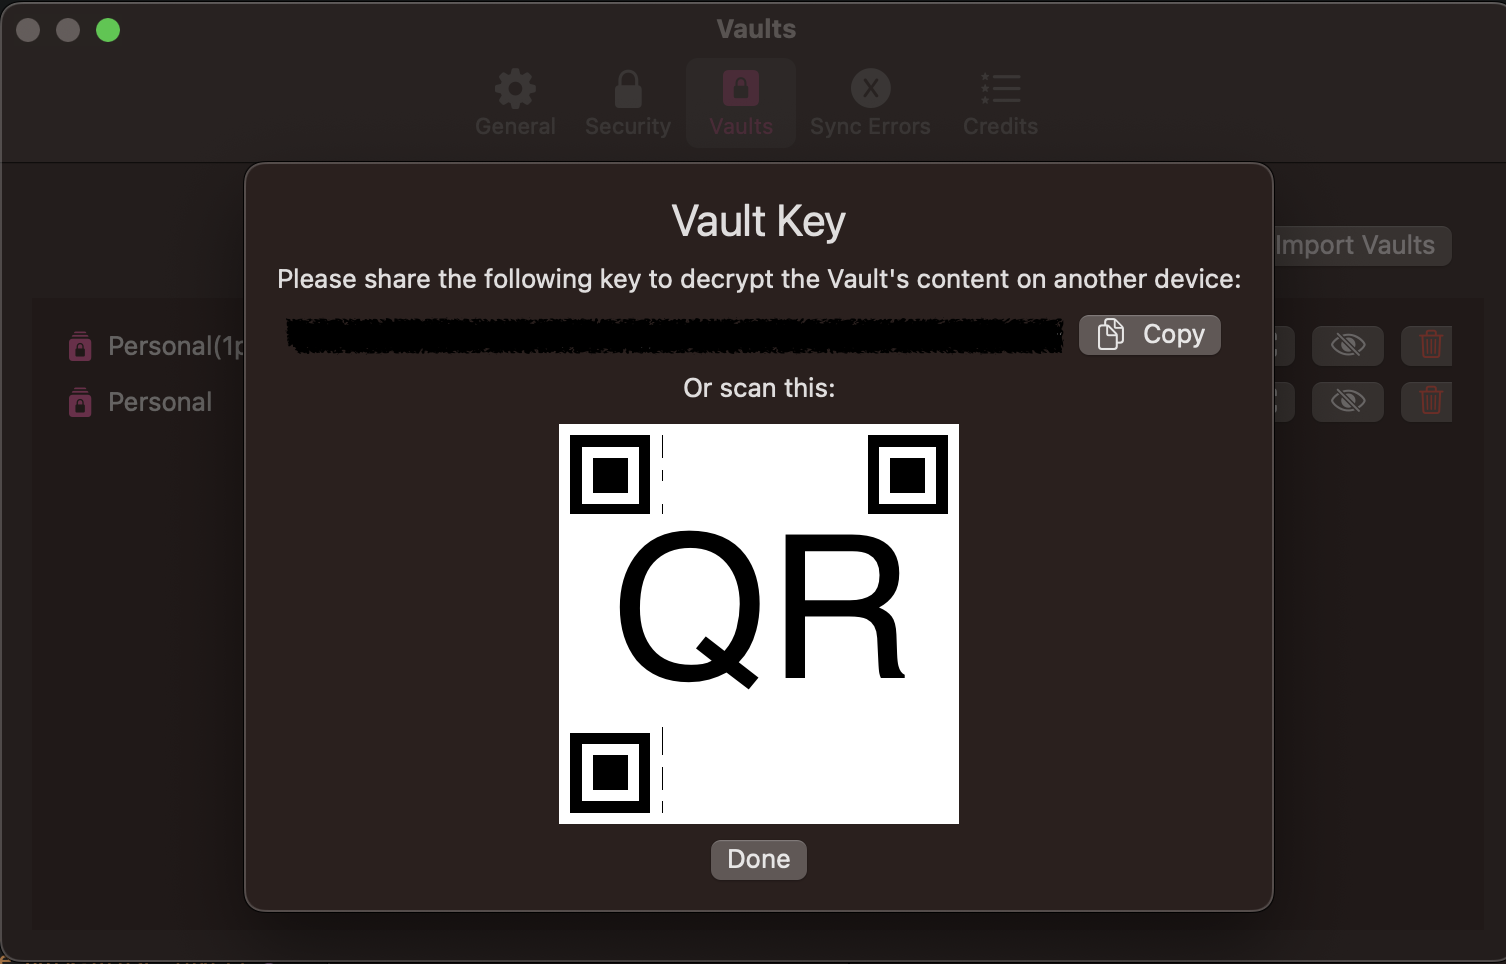 Vault Key sharing